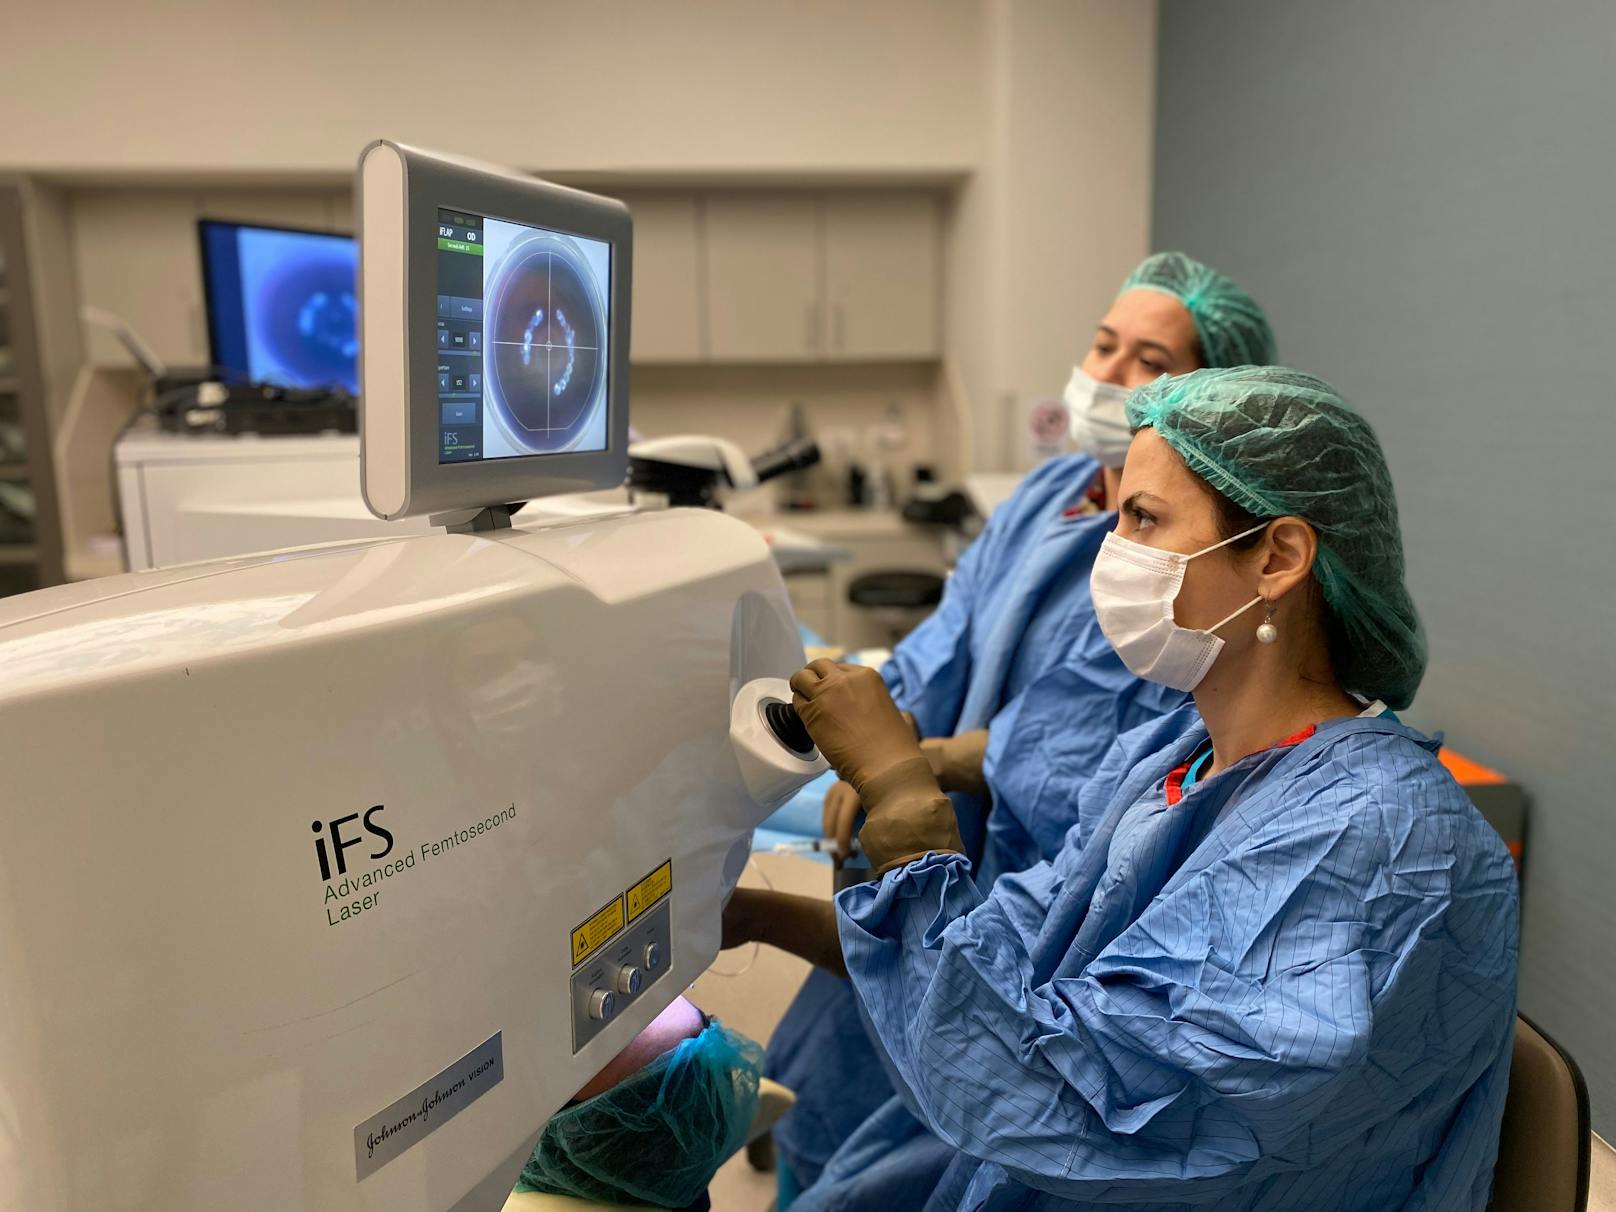 Im Acıbadem-Krankenhaus in Maslak, einem Stadtteil von Istanbul, werden die Augenlaser-Operationen durchgeführt.